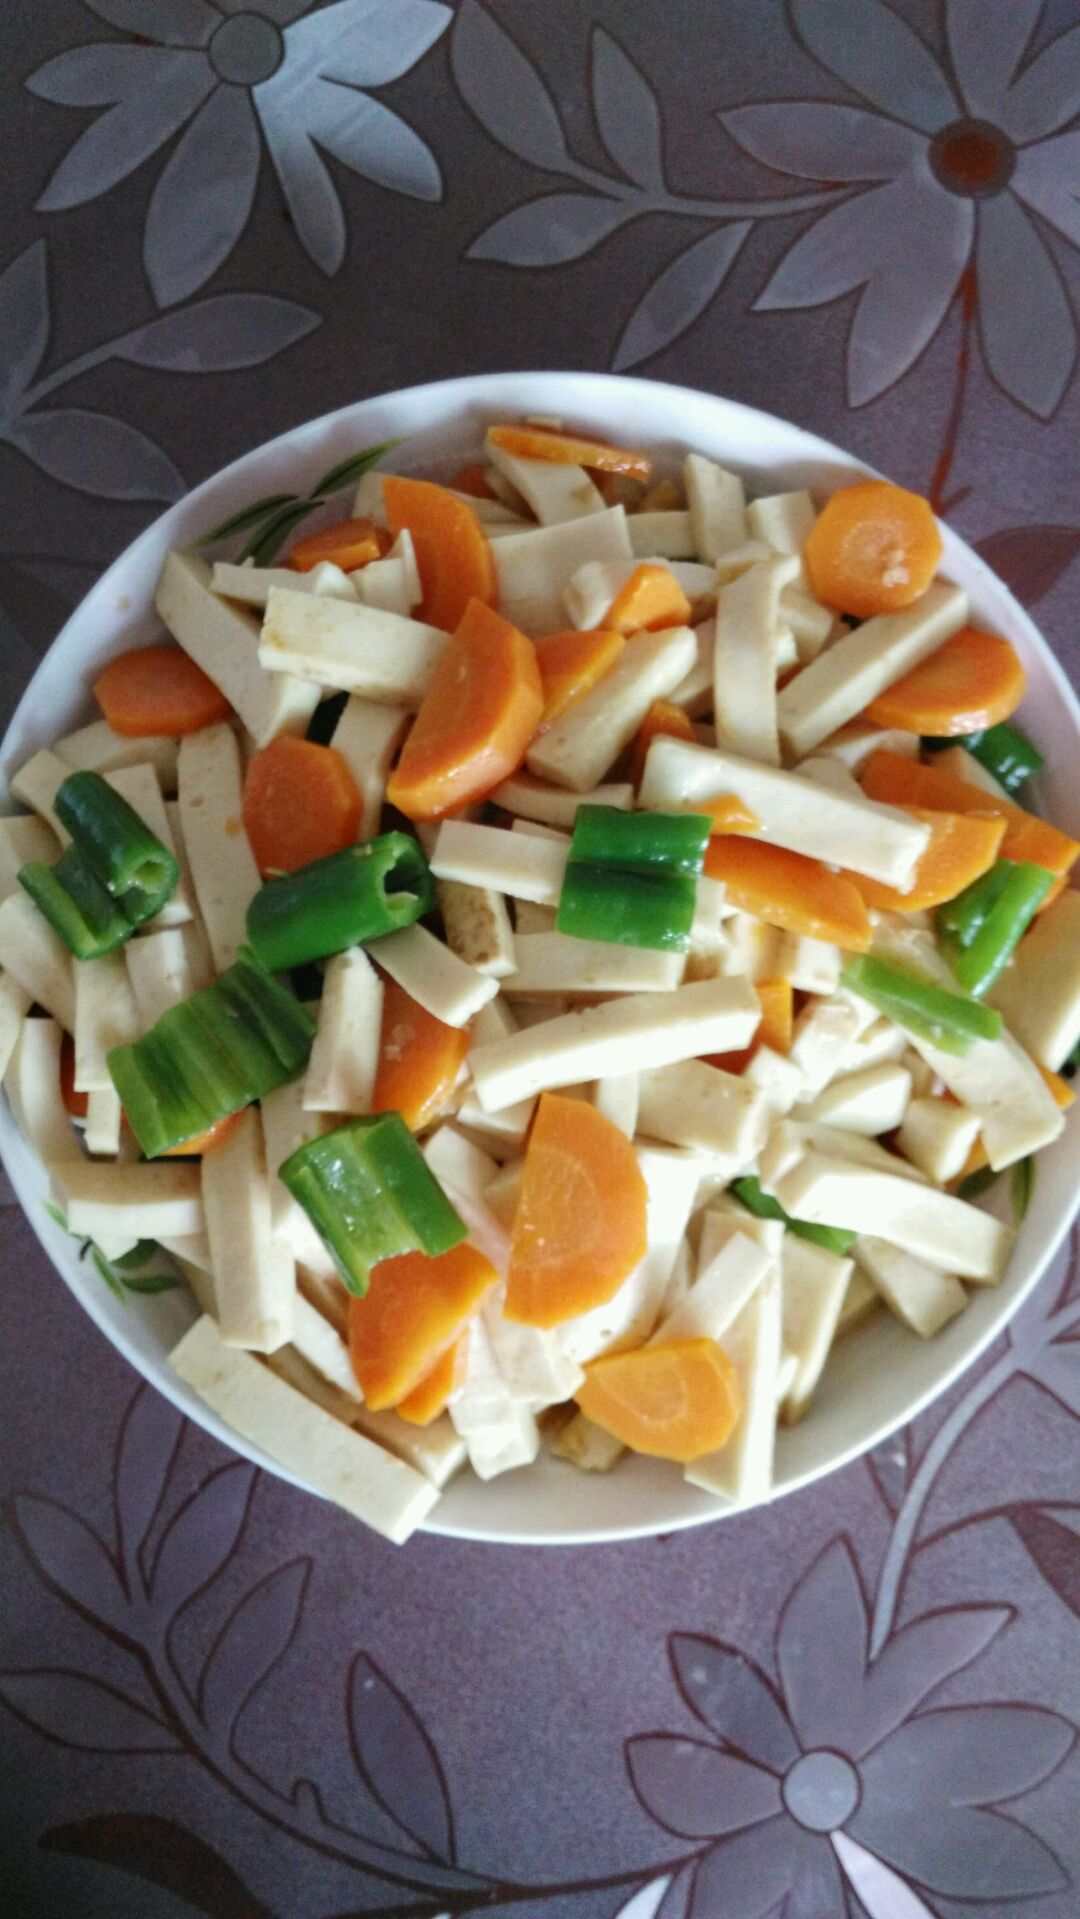 萝卜豆腐汤怎么做_萝卜豆腐汤的做法_糖小田yuan_豆果美食